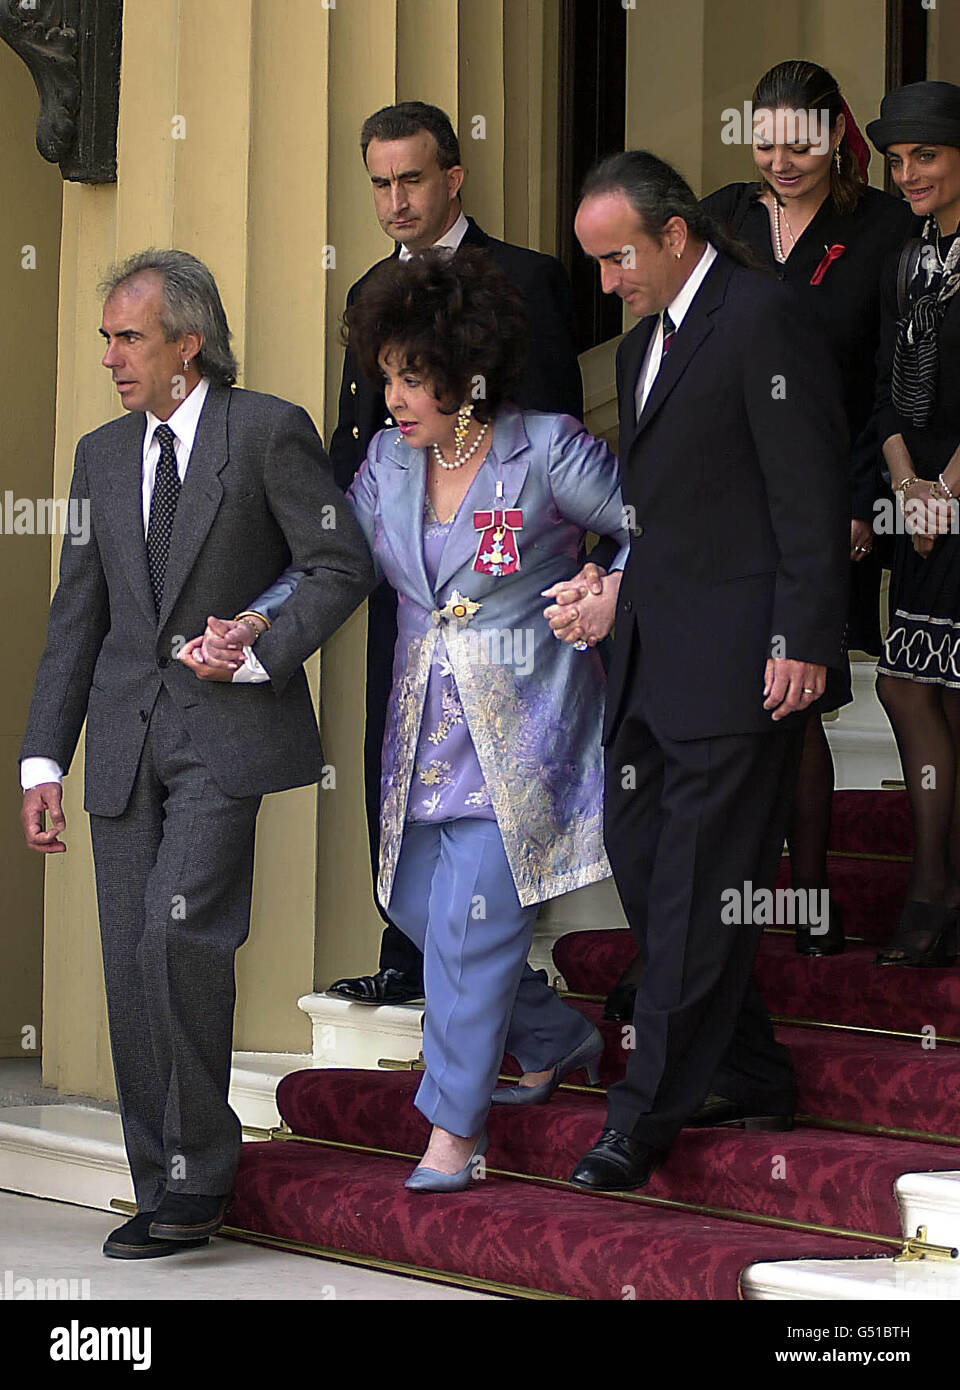 Dame Elizabeth Taylor wird von ihrer Familie begleitet, als sie den Buckingham Palace verlässt, nachdem sie von der britischen Königin Elizabeth II. Bei einer Zeremonie im Buckingham Palace, London, die Ehre der Kommandantin des britischen Ordens erhalten hat. Stockfoto